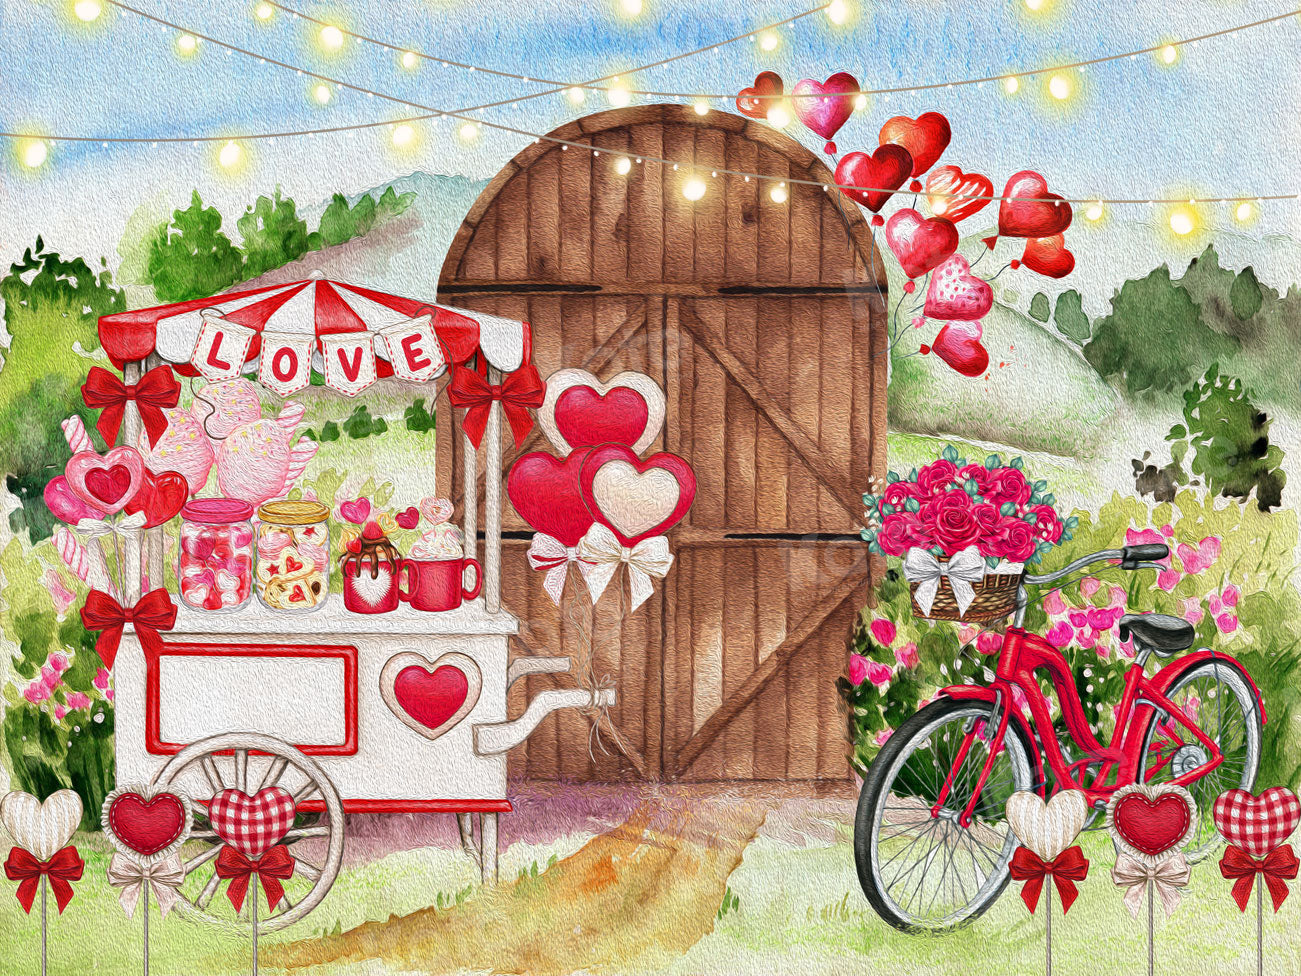 Kate Valentinstag Malerei Liebe Candy Cart Tür Hintergrund für die Fotografie